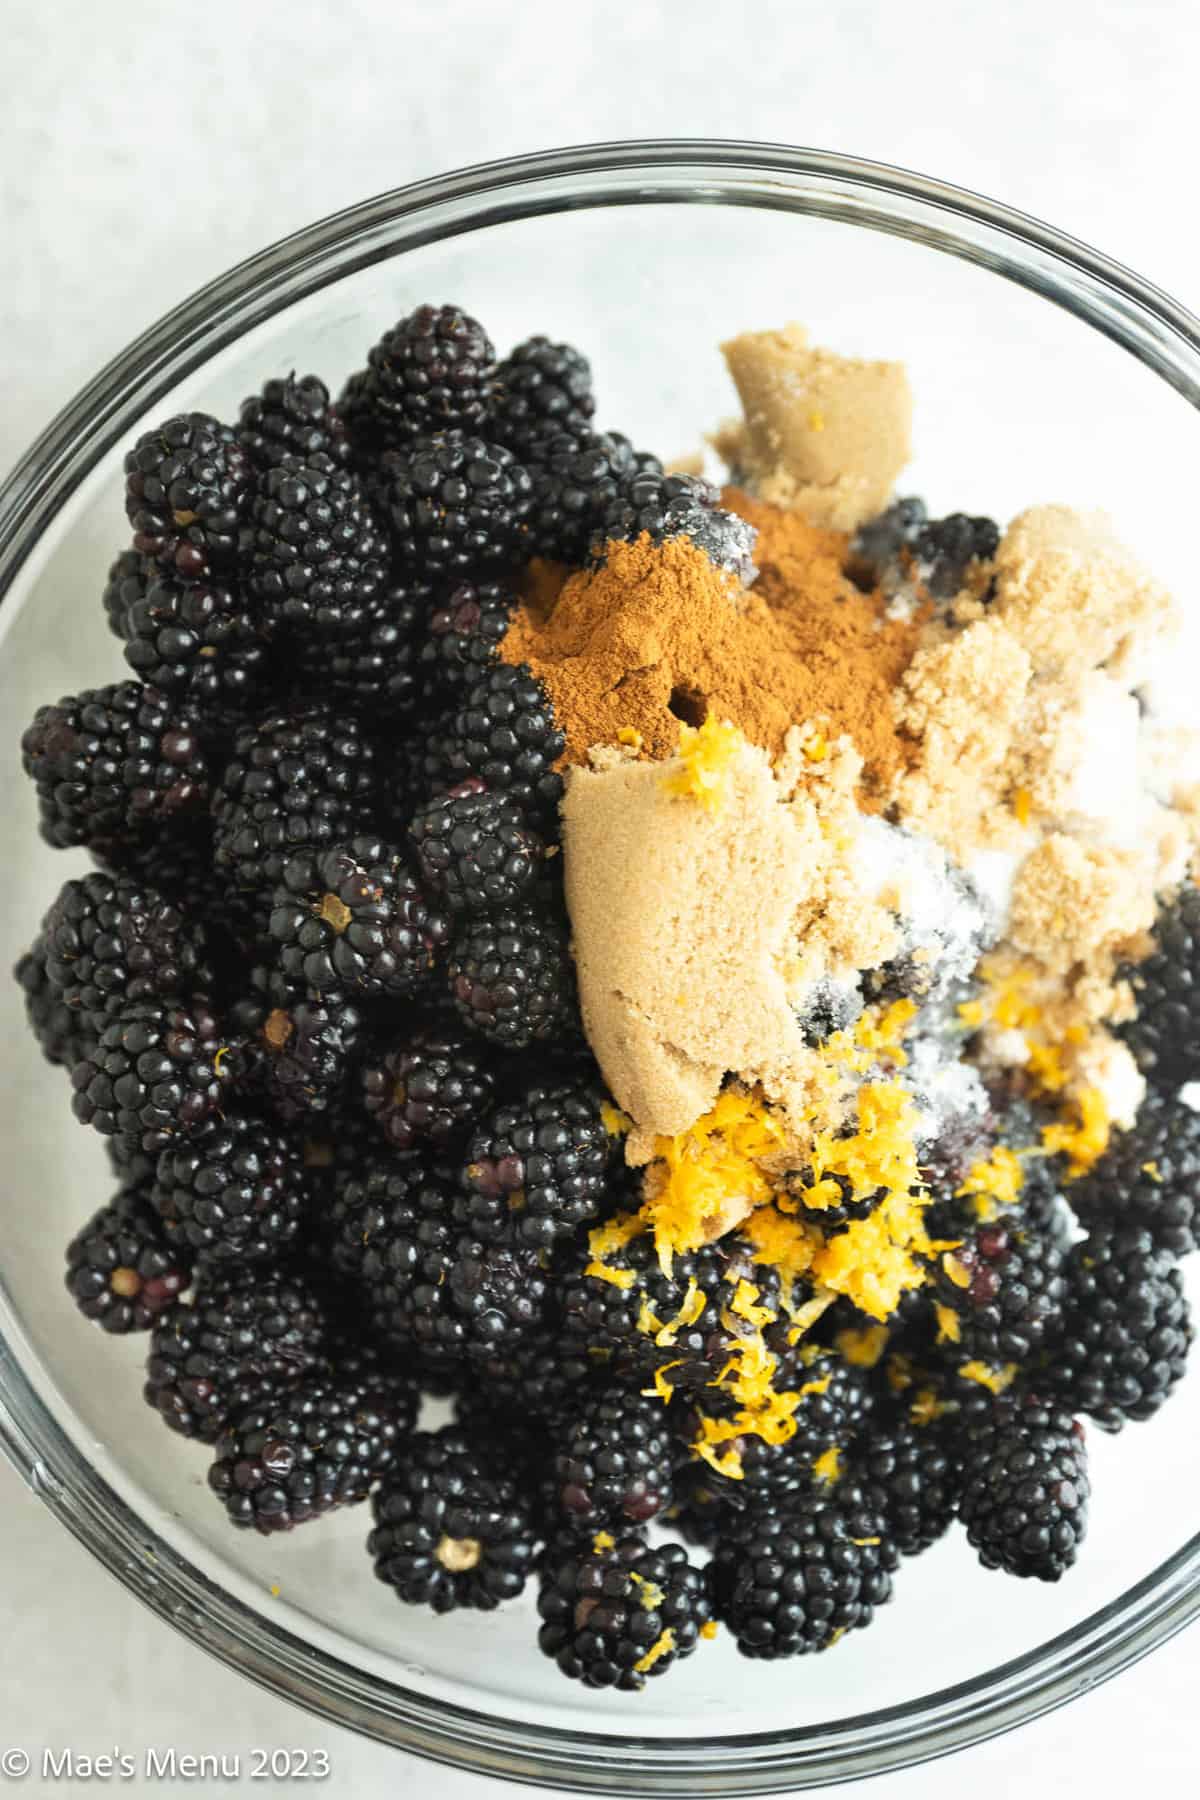 A mixing bowl of blackberries, brown sugar, lemon zest, and cinnamon.